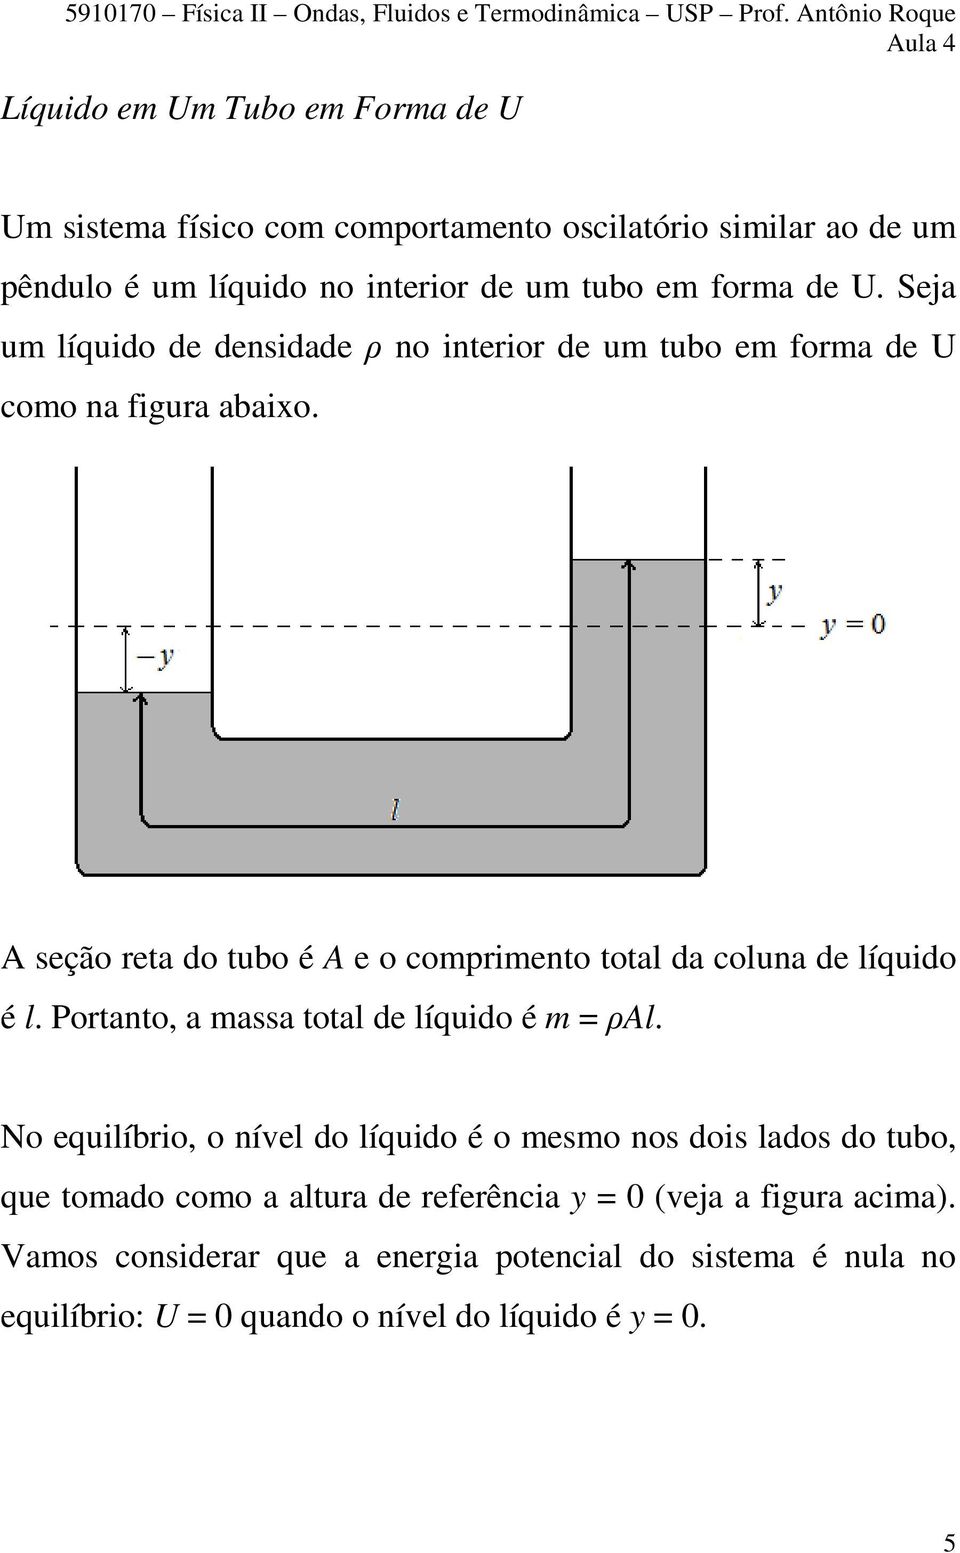 A seção reta do tubo é A e o comprimento total da coluna de líquido é l. Portanto, a massa total de líquido é m = ρal.